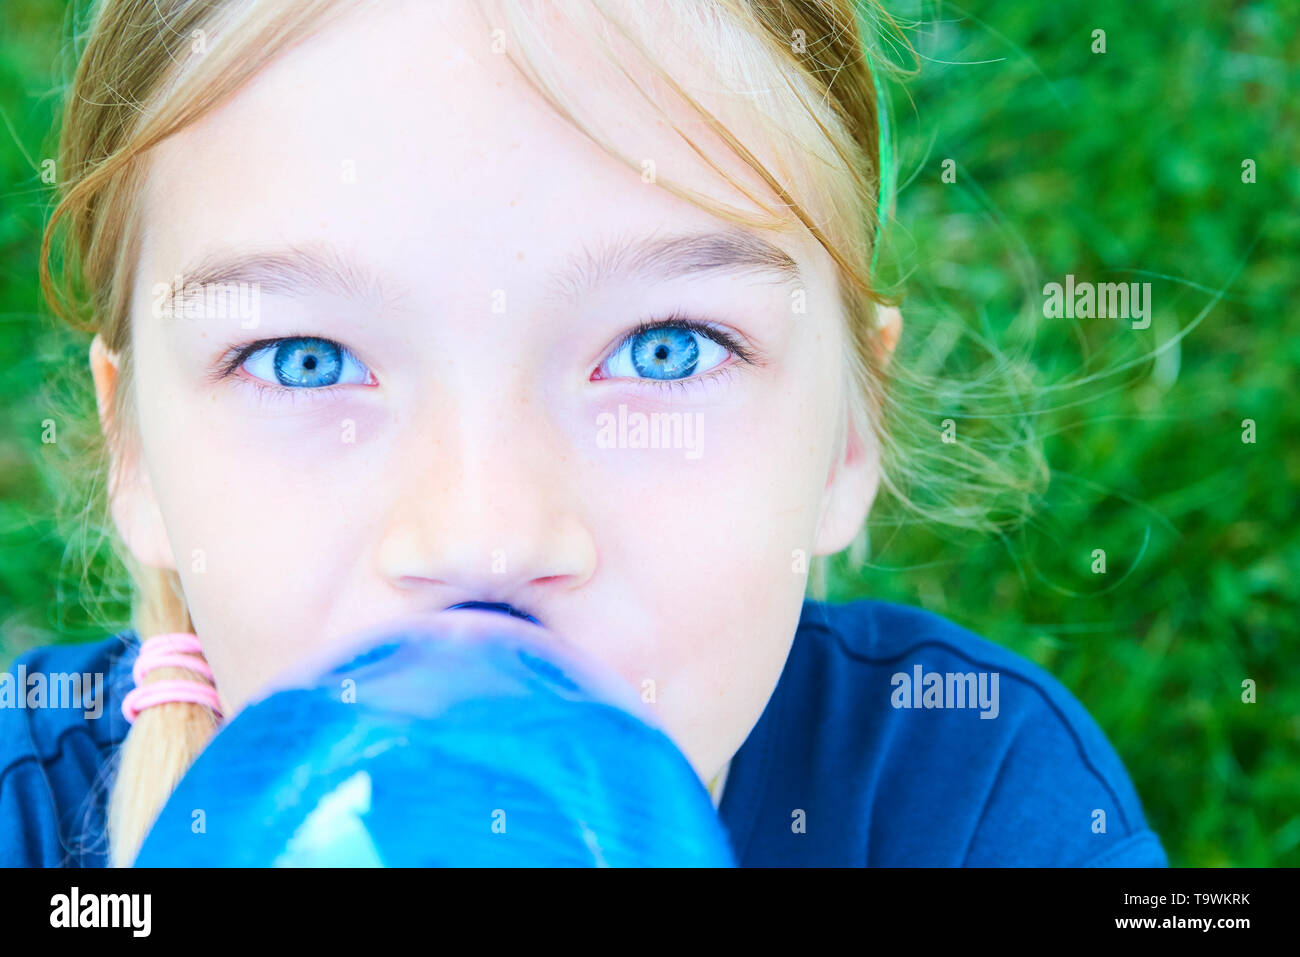 Close up portrait of girl adorable aux yeux bleus l'eau potable de la bouteille bleue en plastique avec fond de verdure Banque D'Images